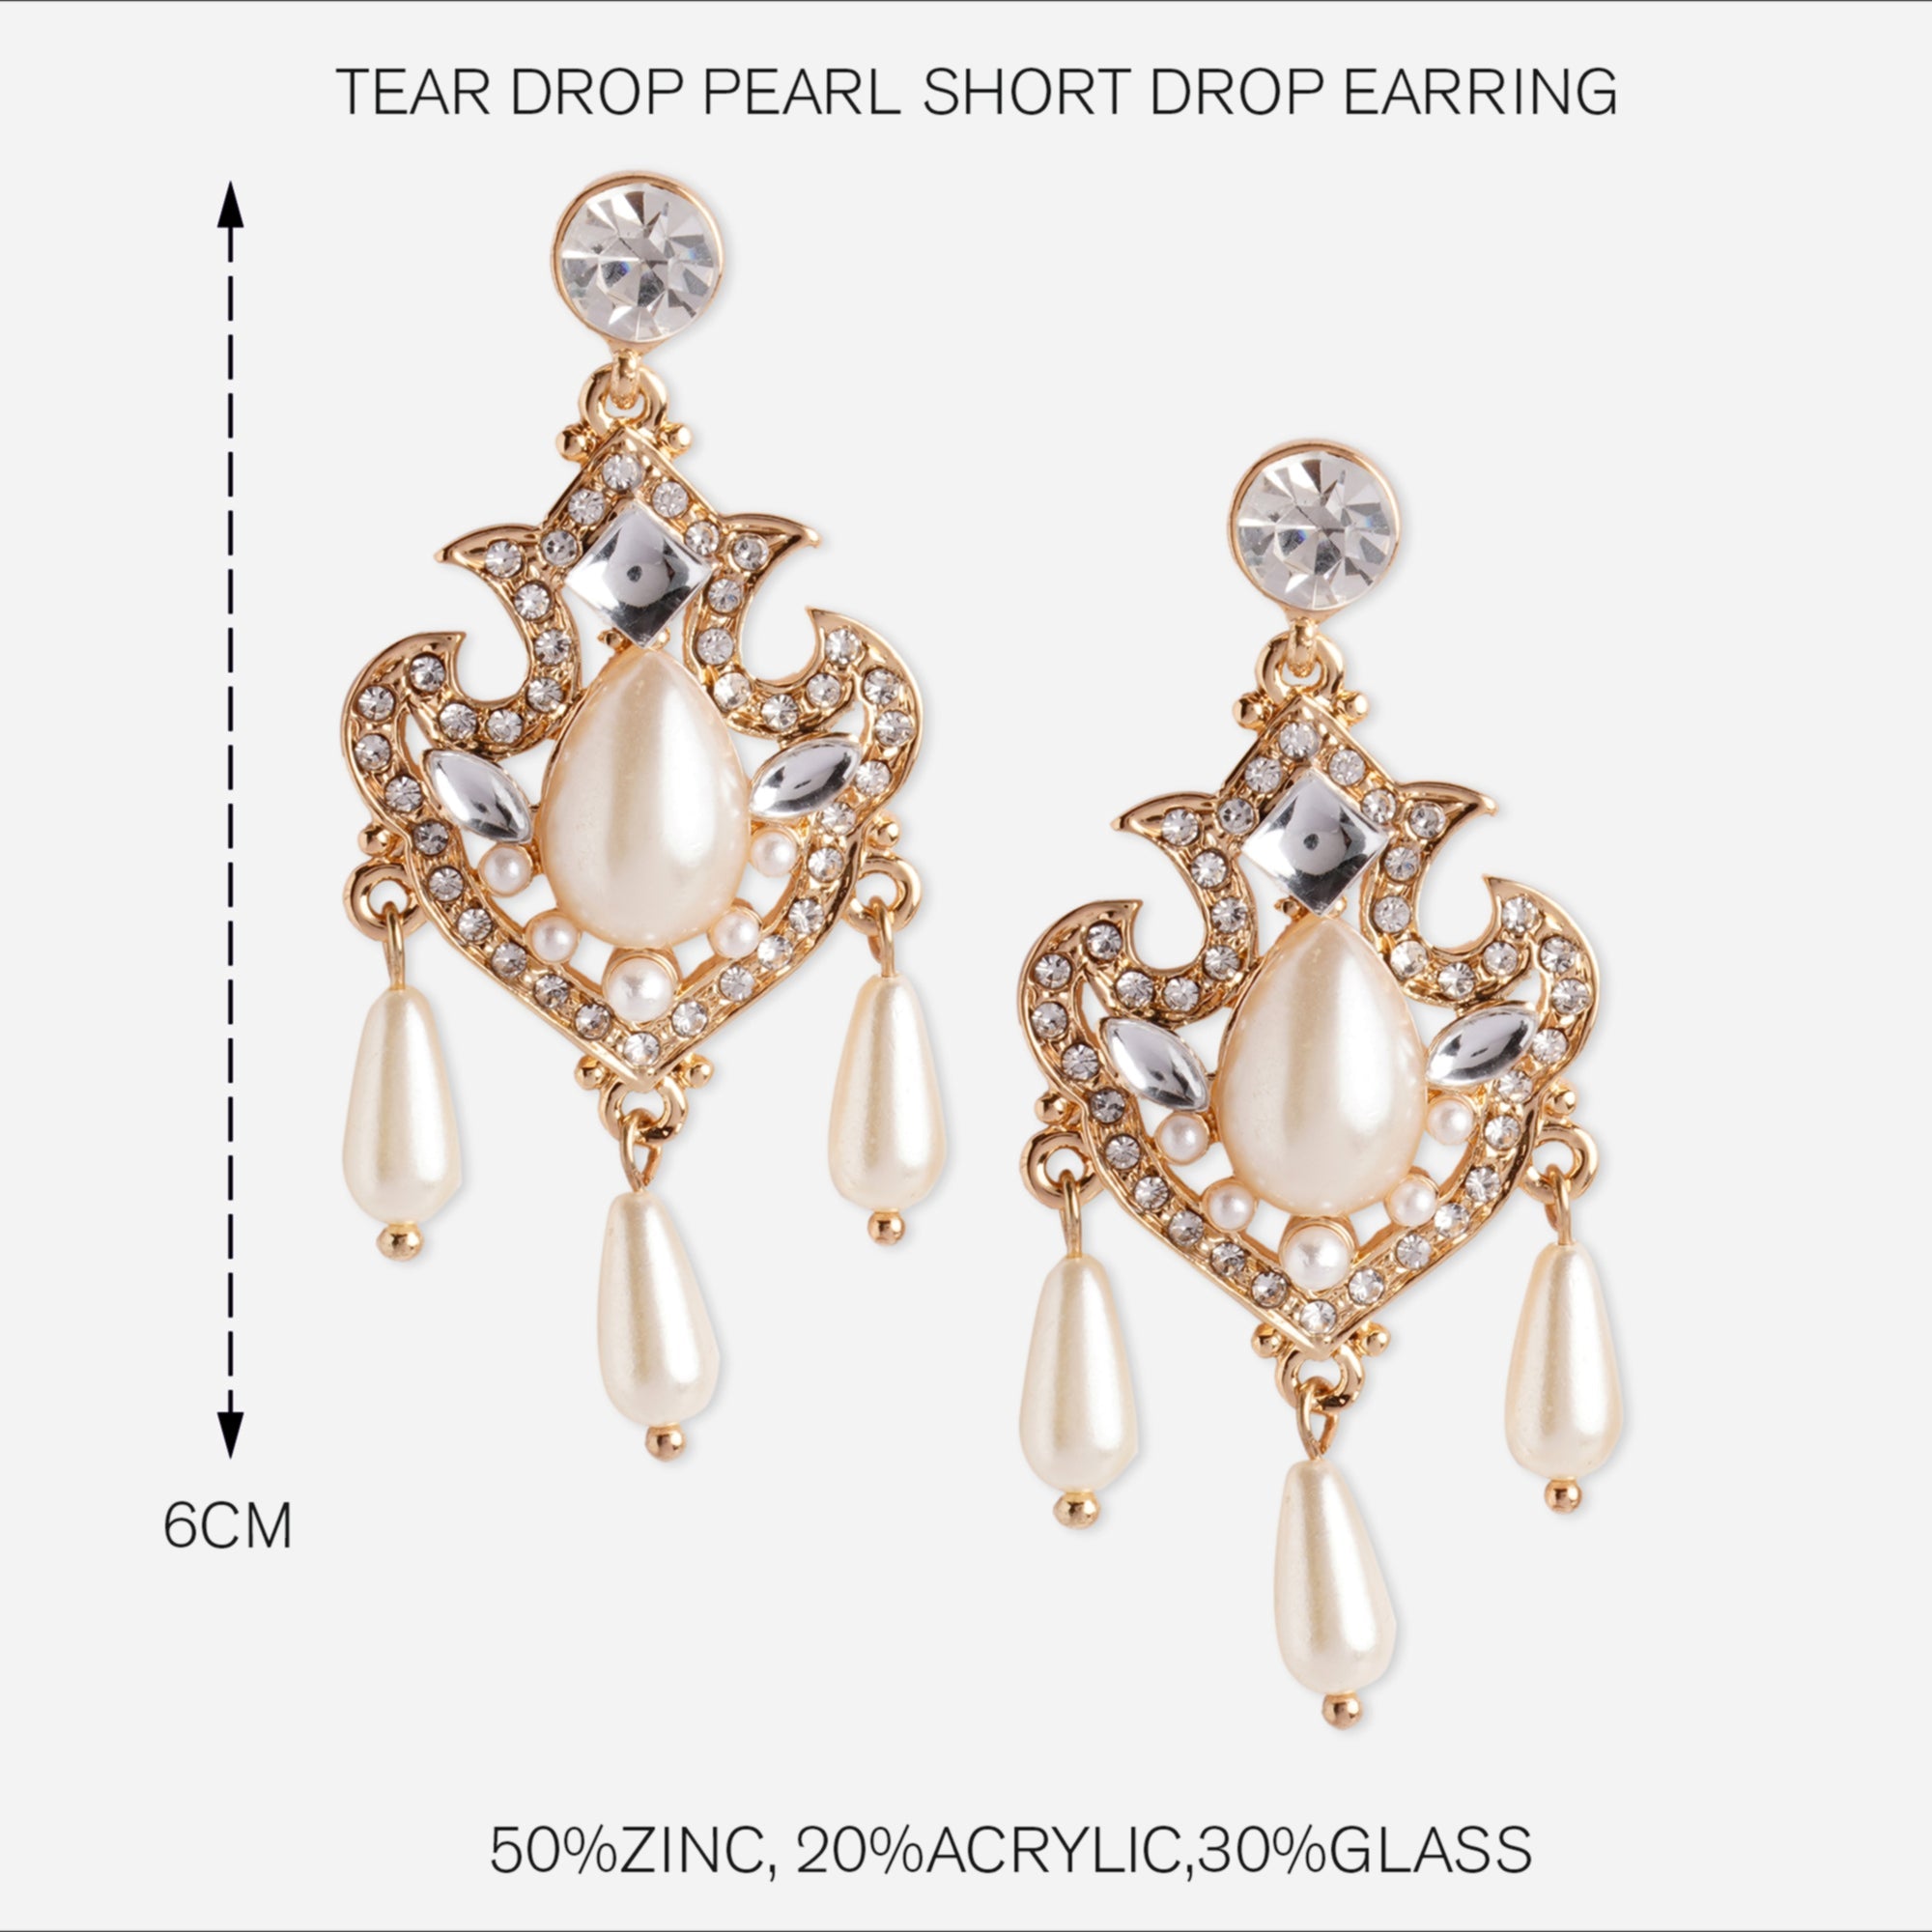 Accessorize London Women's Tear Drop Pearl Short Drop Earring